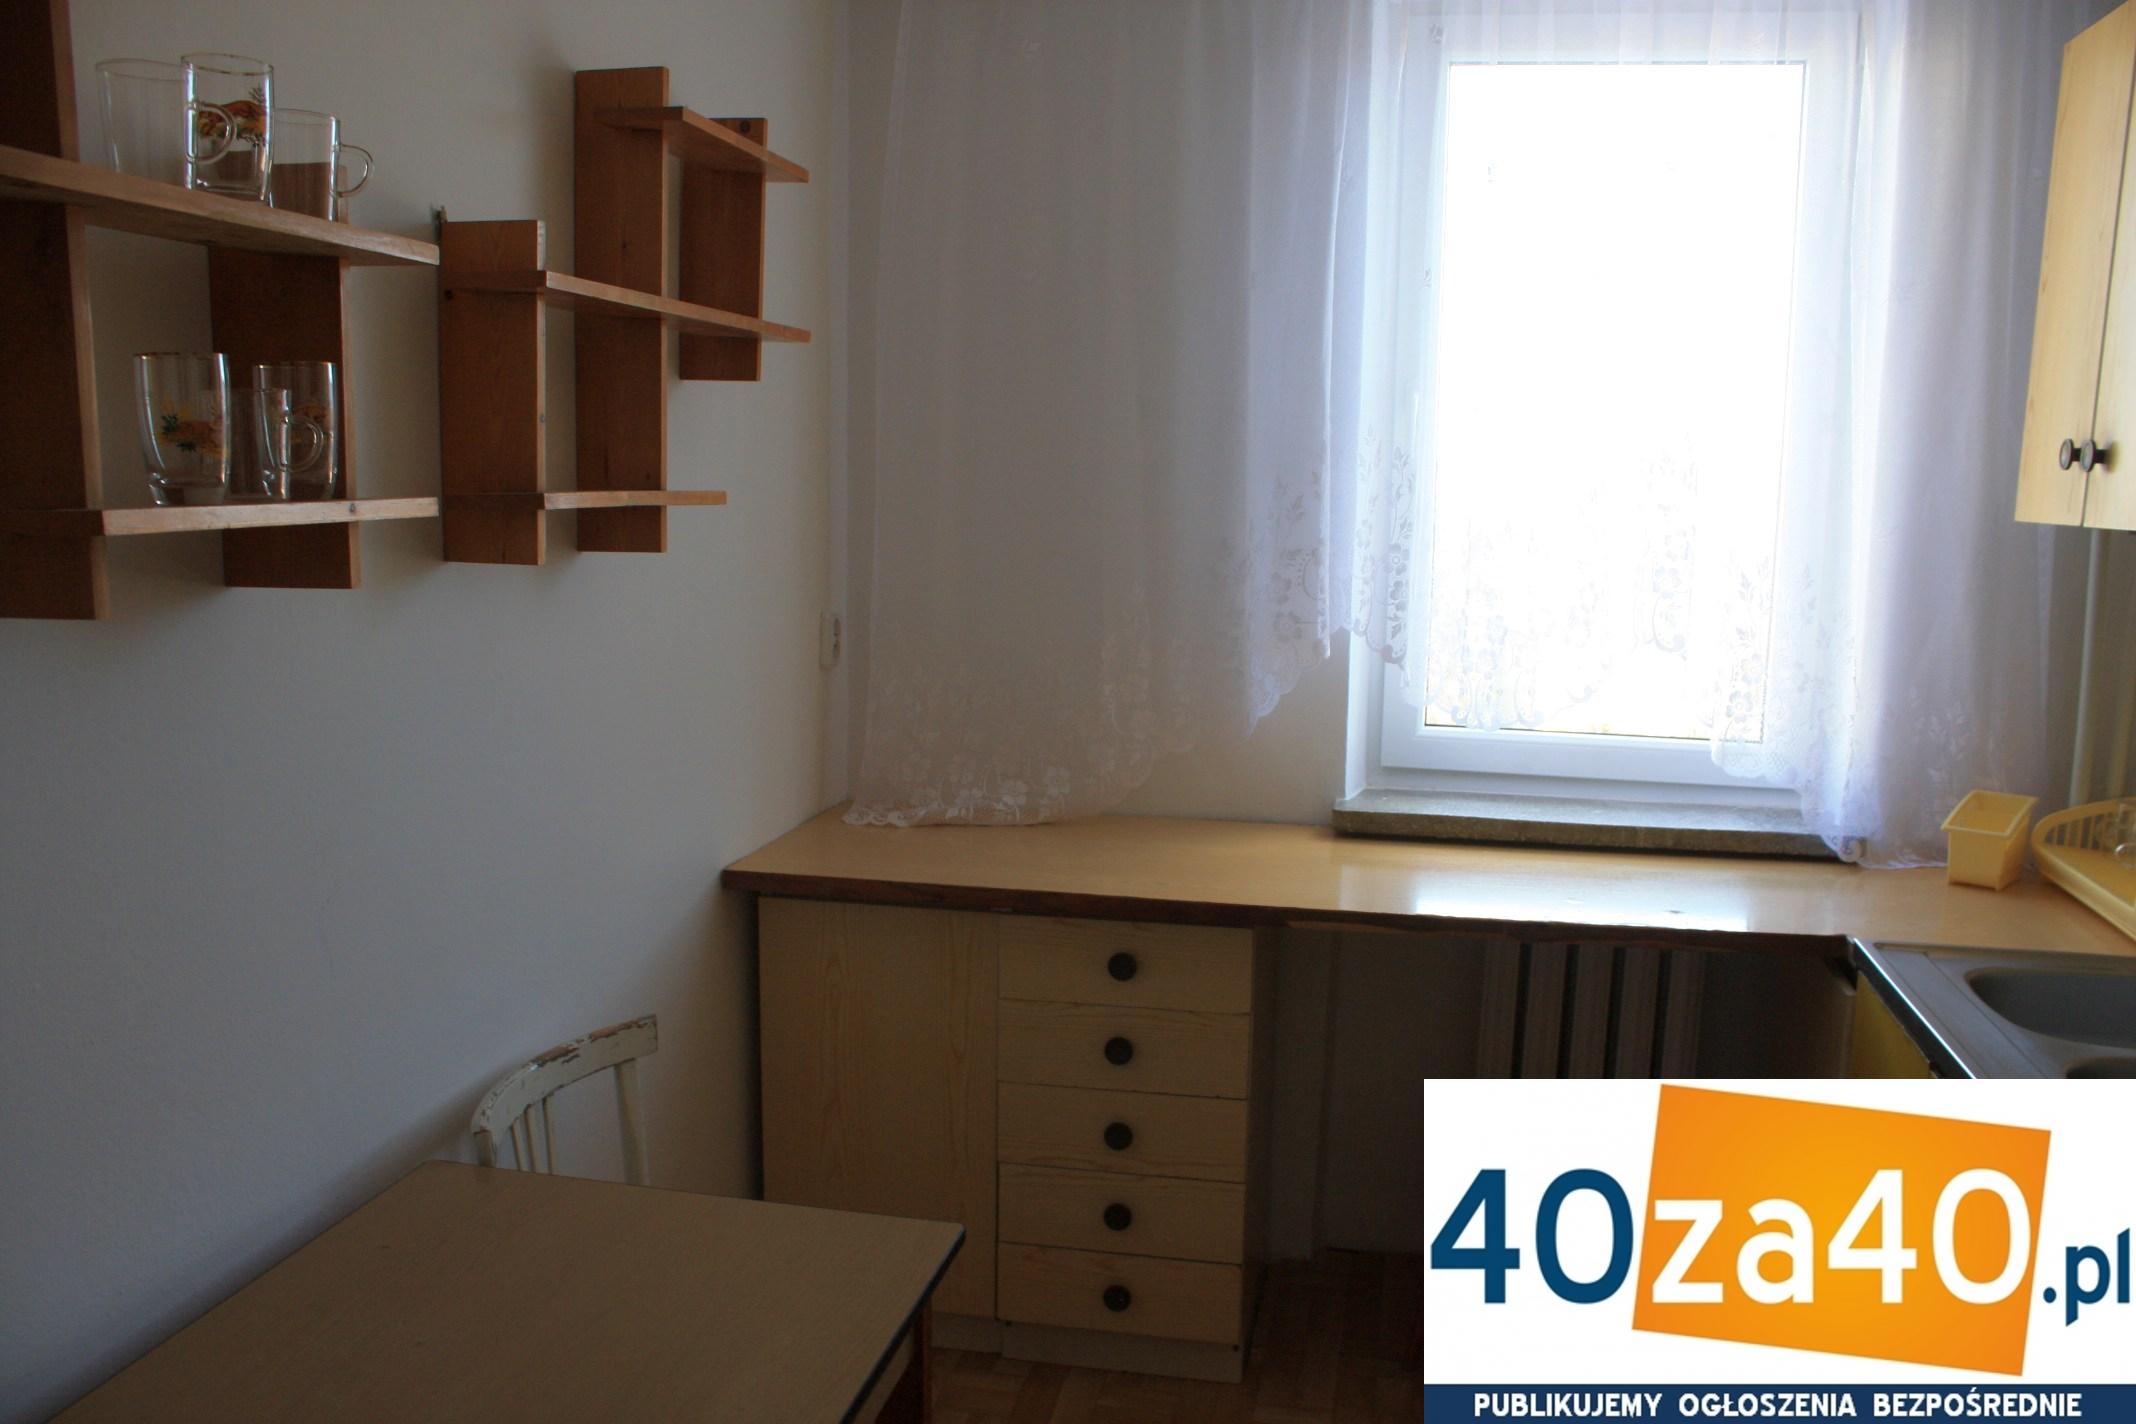 Mieszkanie do wynajęcia, pokoje: 2, cena: 1 700,00 PLN, Warszawa, kontakt: 604-462-524